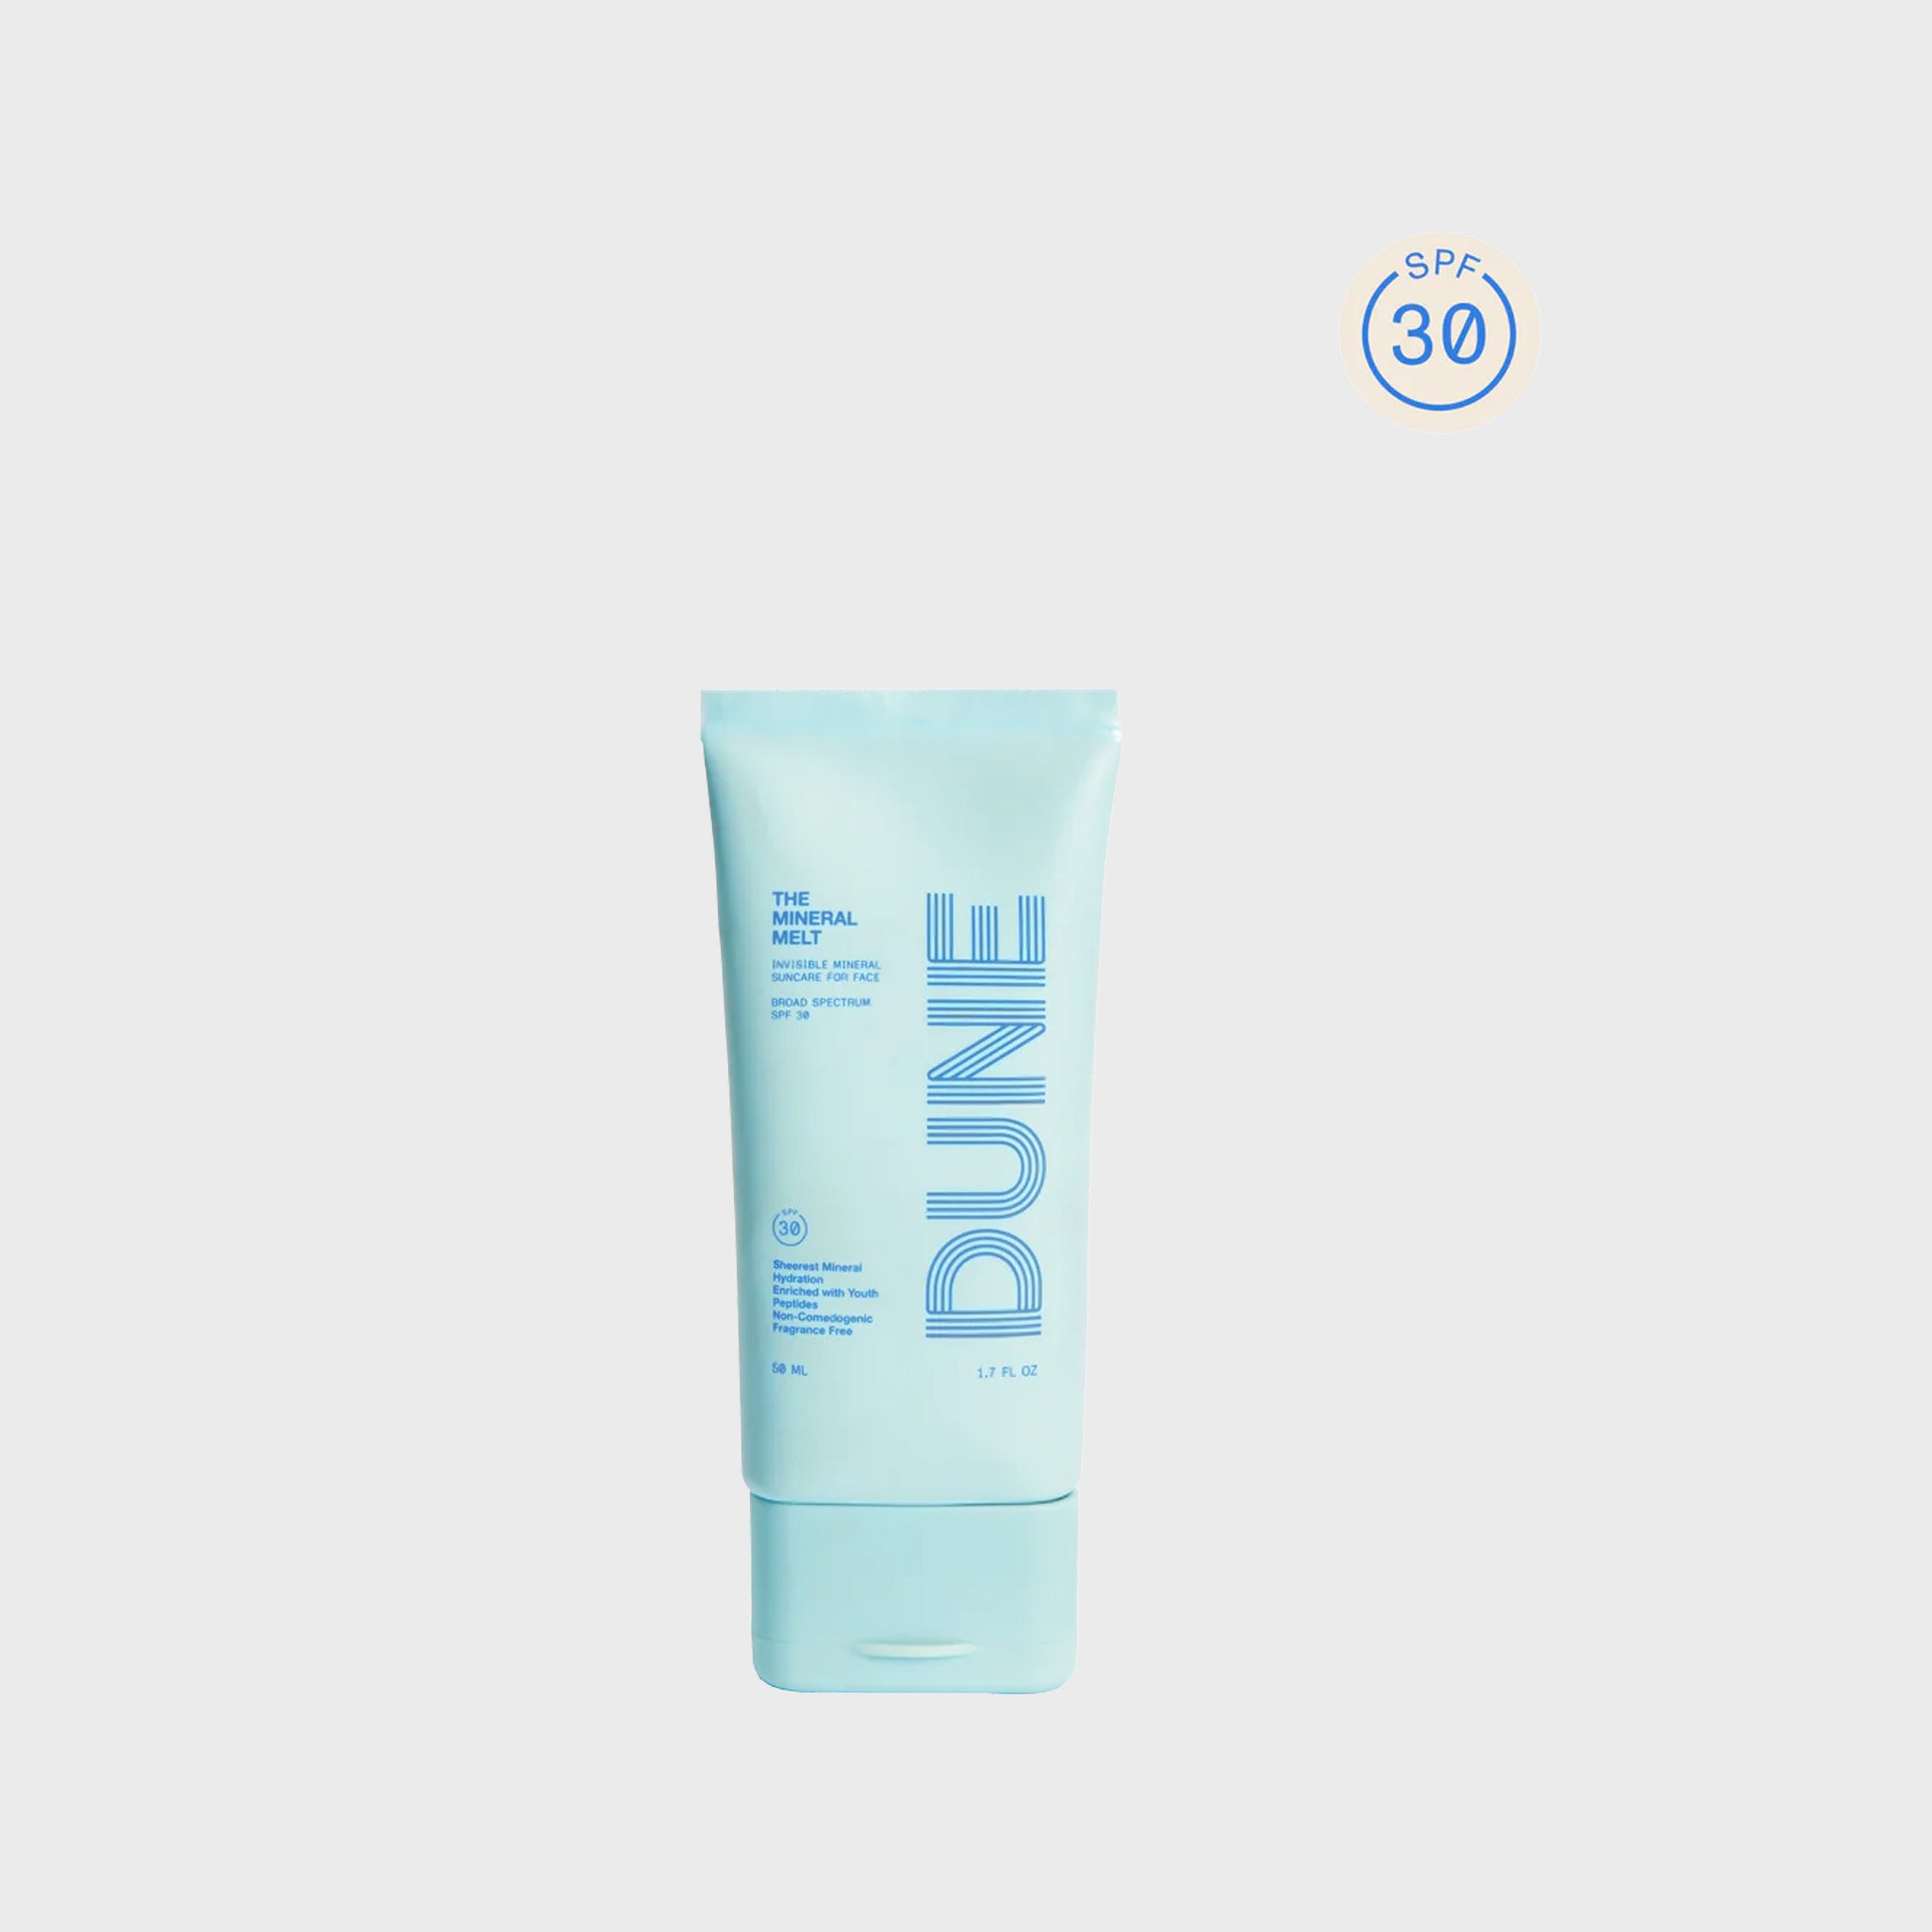 Light blue tube of Mineral Melt by DUNE suncare.